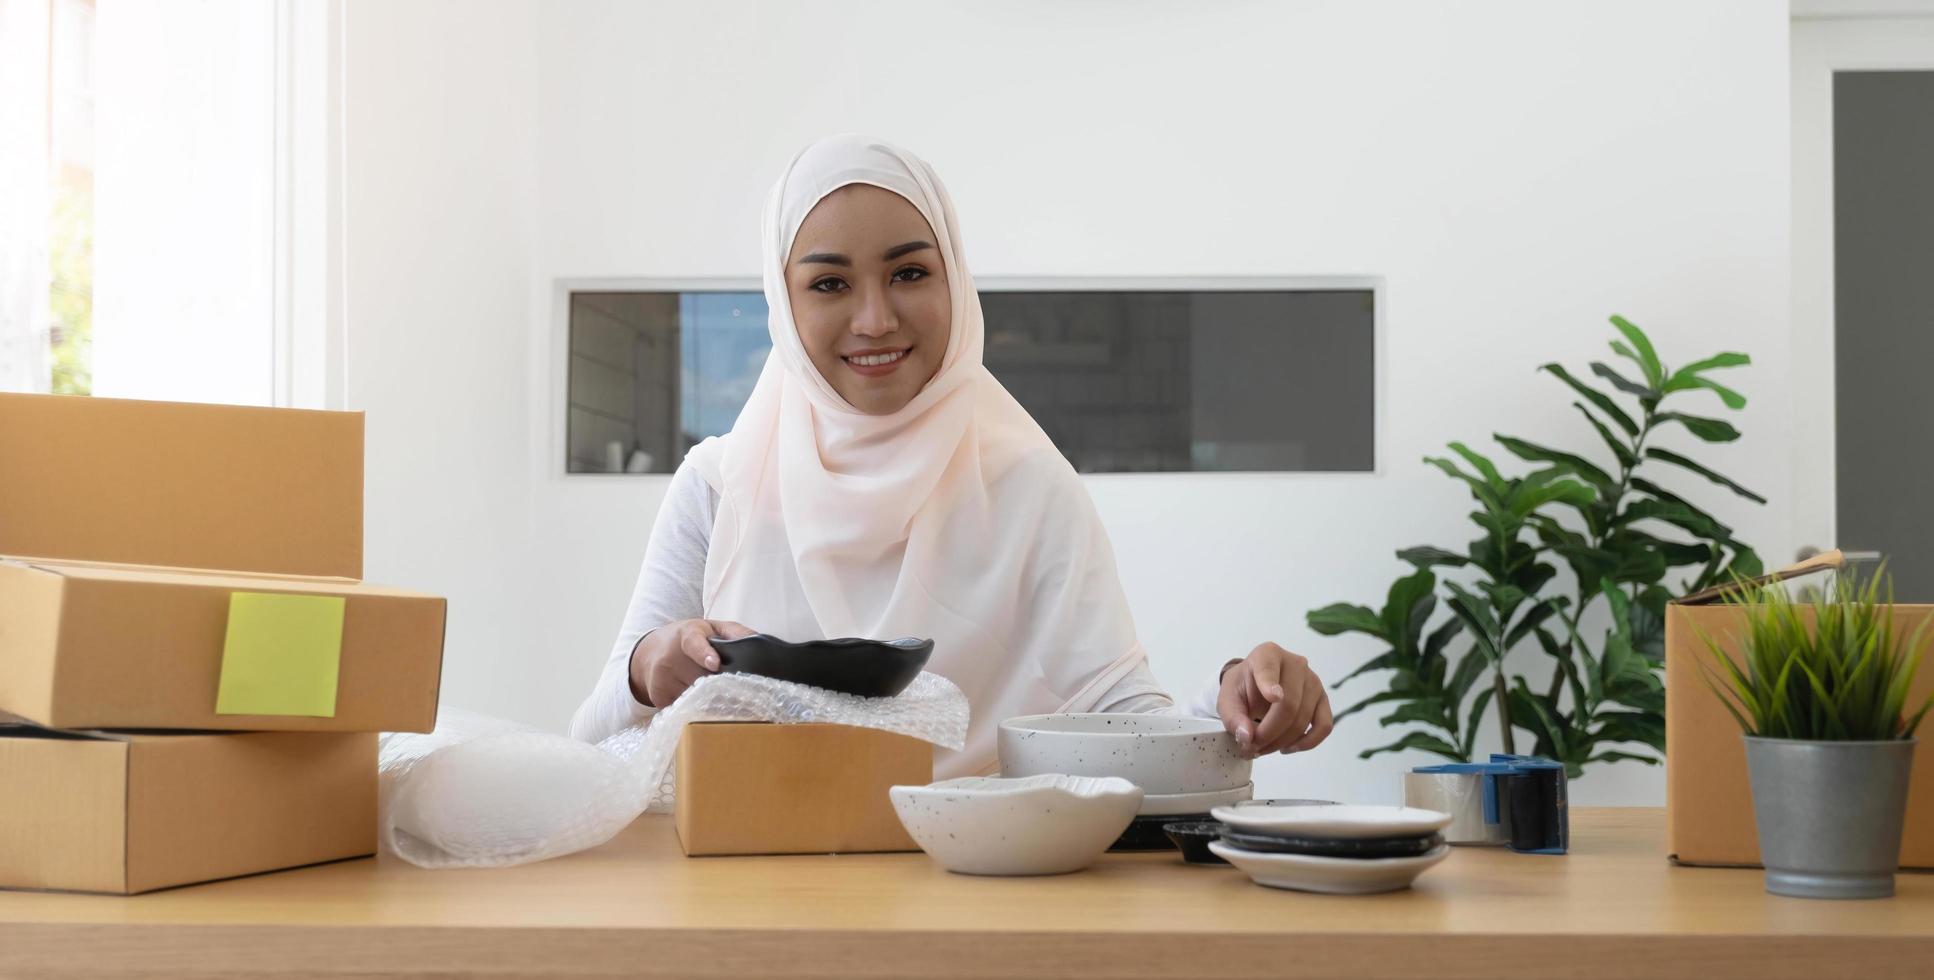 mulher muçulmana dona de negócios que trabalha em compras on-line prepara o processo de embalagem do produto no escritório, conceito de jovem empresário. foto